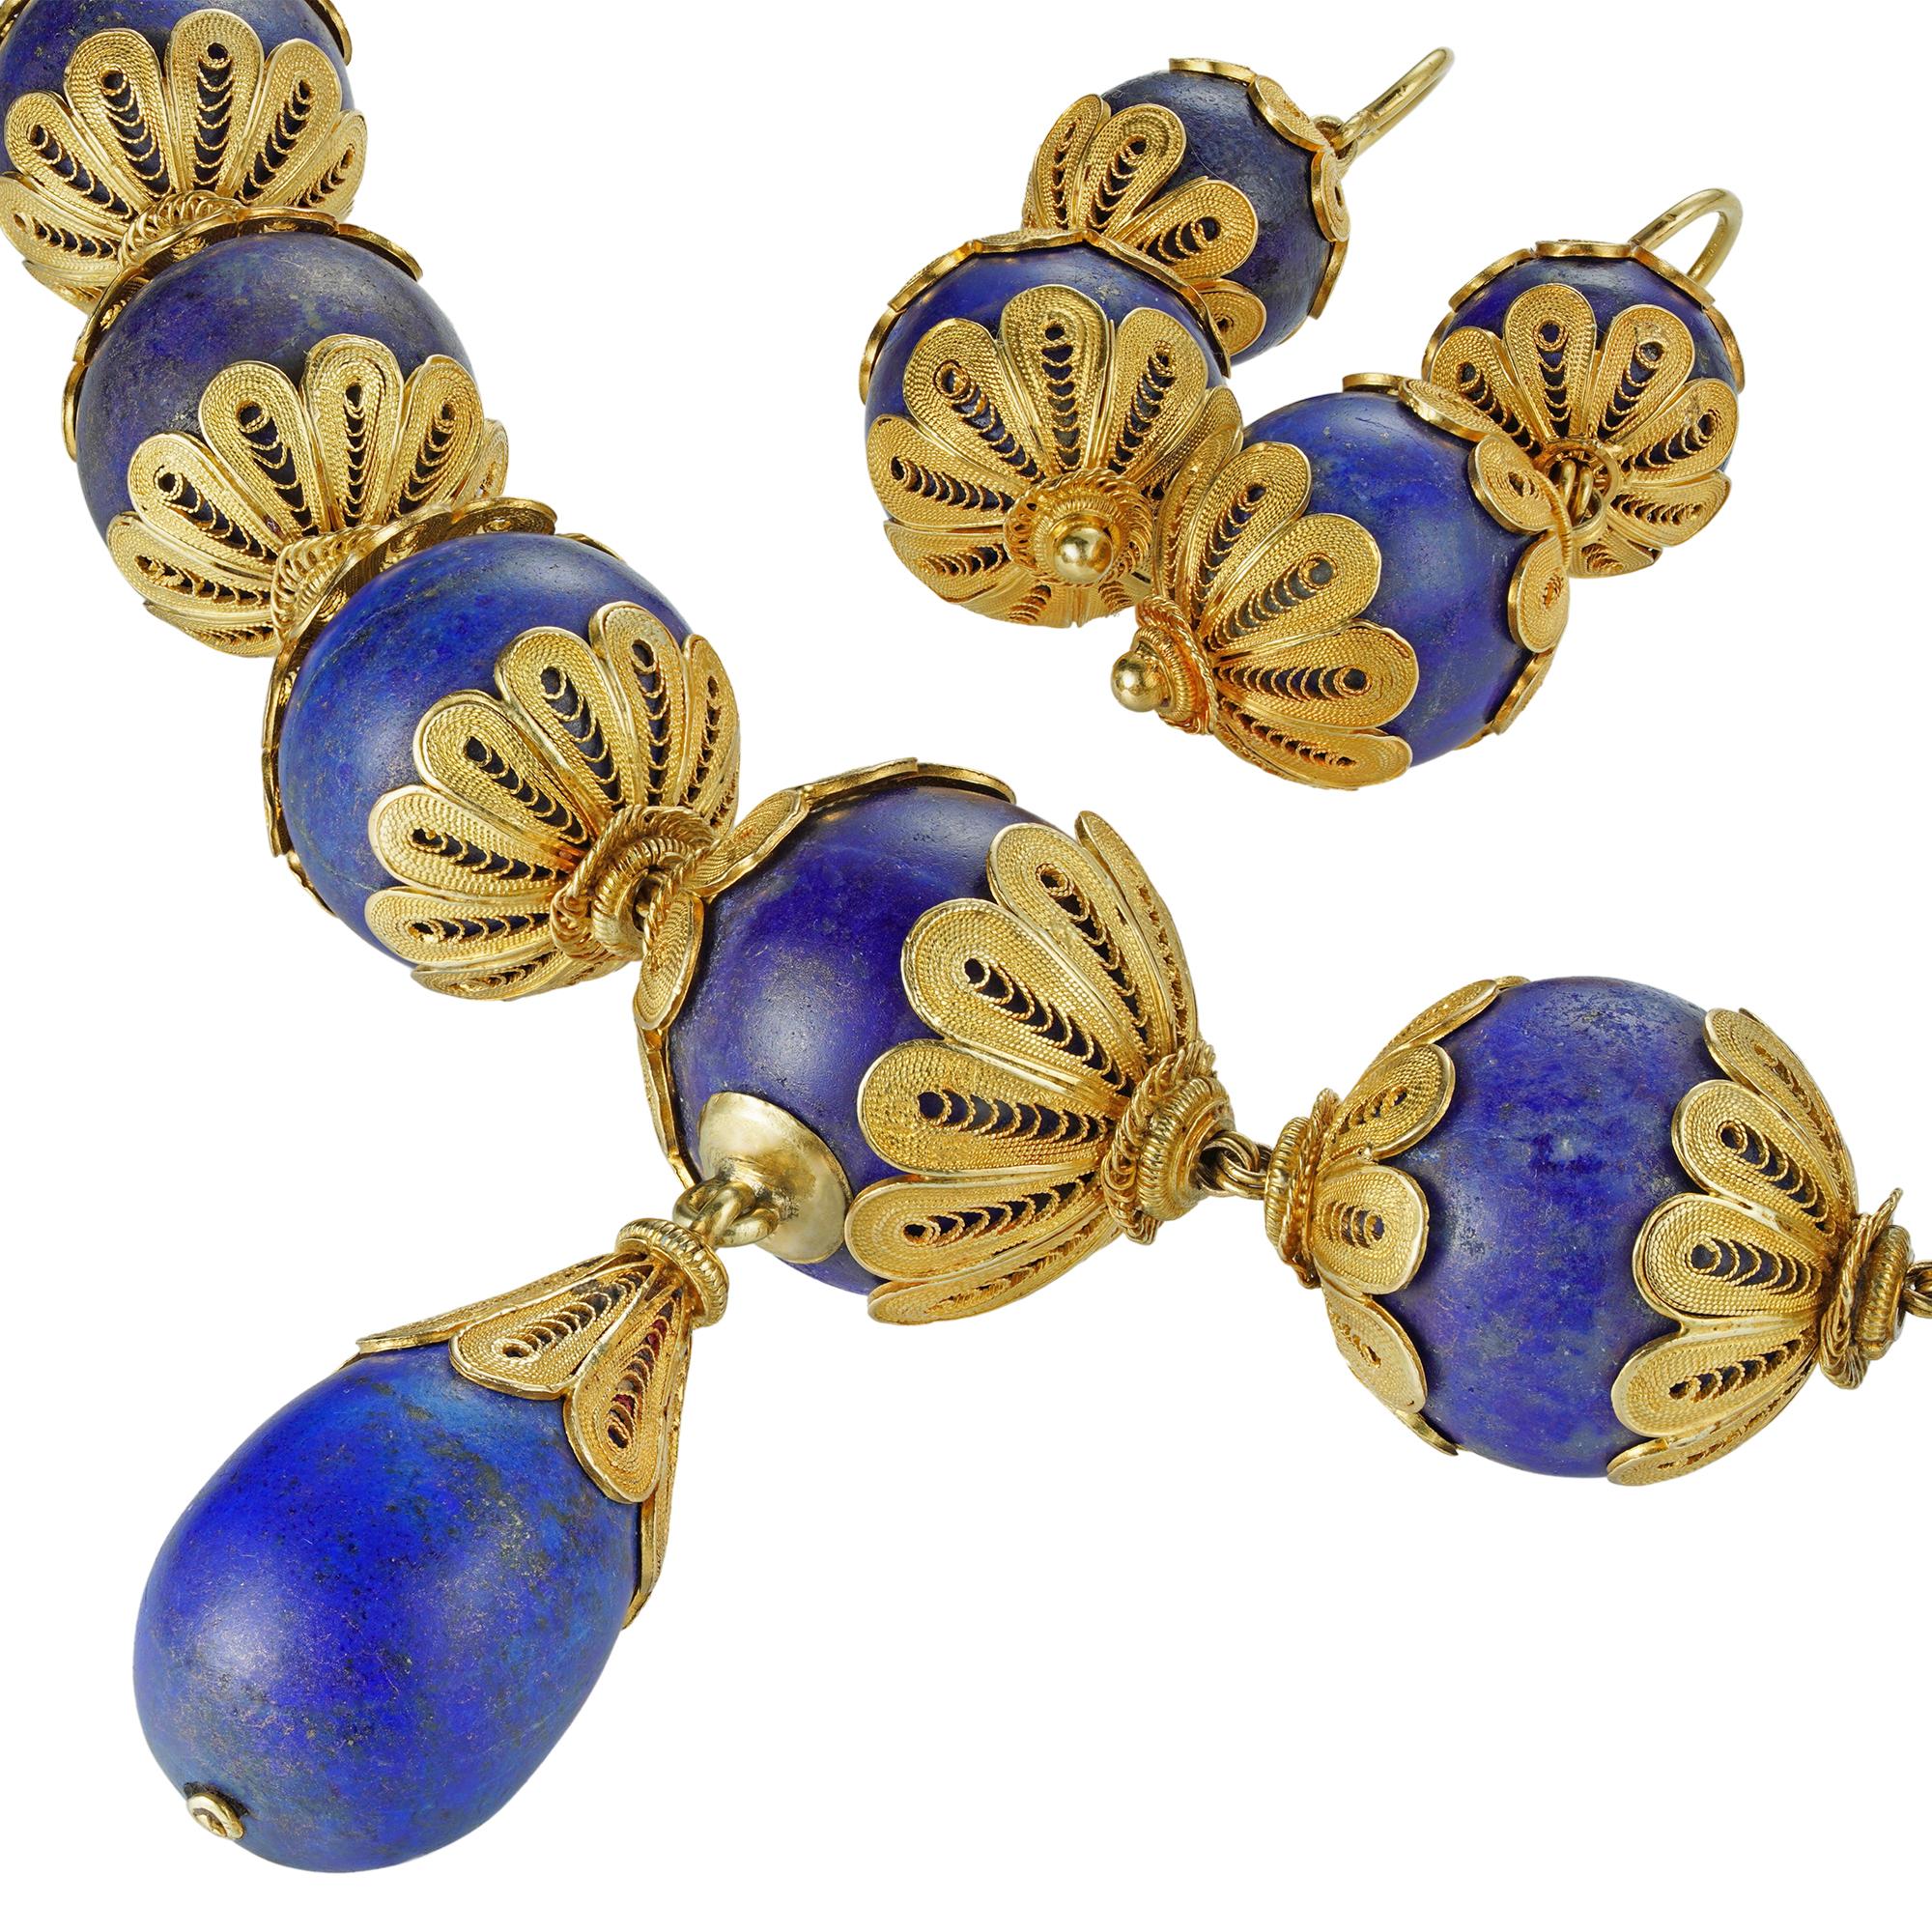 Ein 19. Jahrhundert Lapislazuli Perlen und Gold Demi-Parure, die Kette bestand aus vierundzwanzig abgestuften Lapis Perlen Messung von 17,8 mm bis 13,6 mm, mit Gelbgold filigranen Dekorationen, die Aufhängung eines Lapis Tropfen mit einem Gold